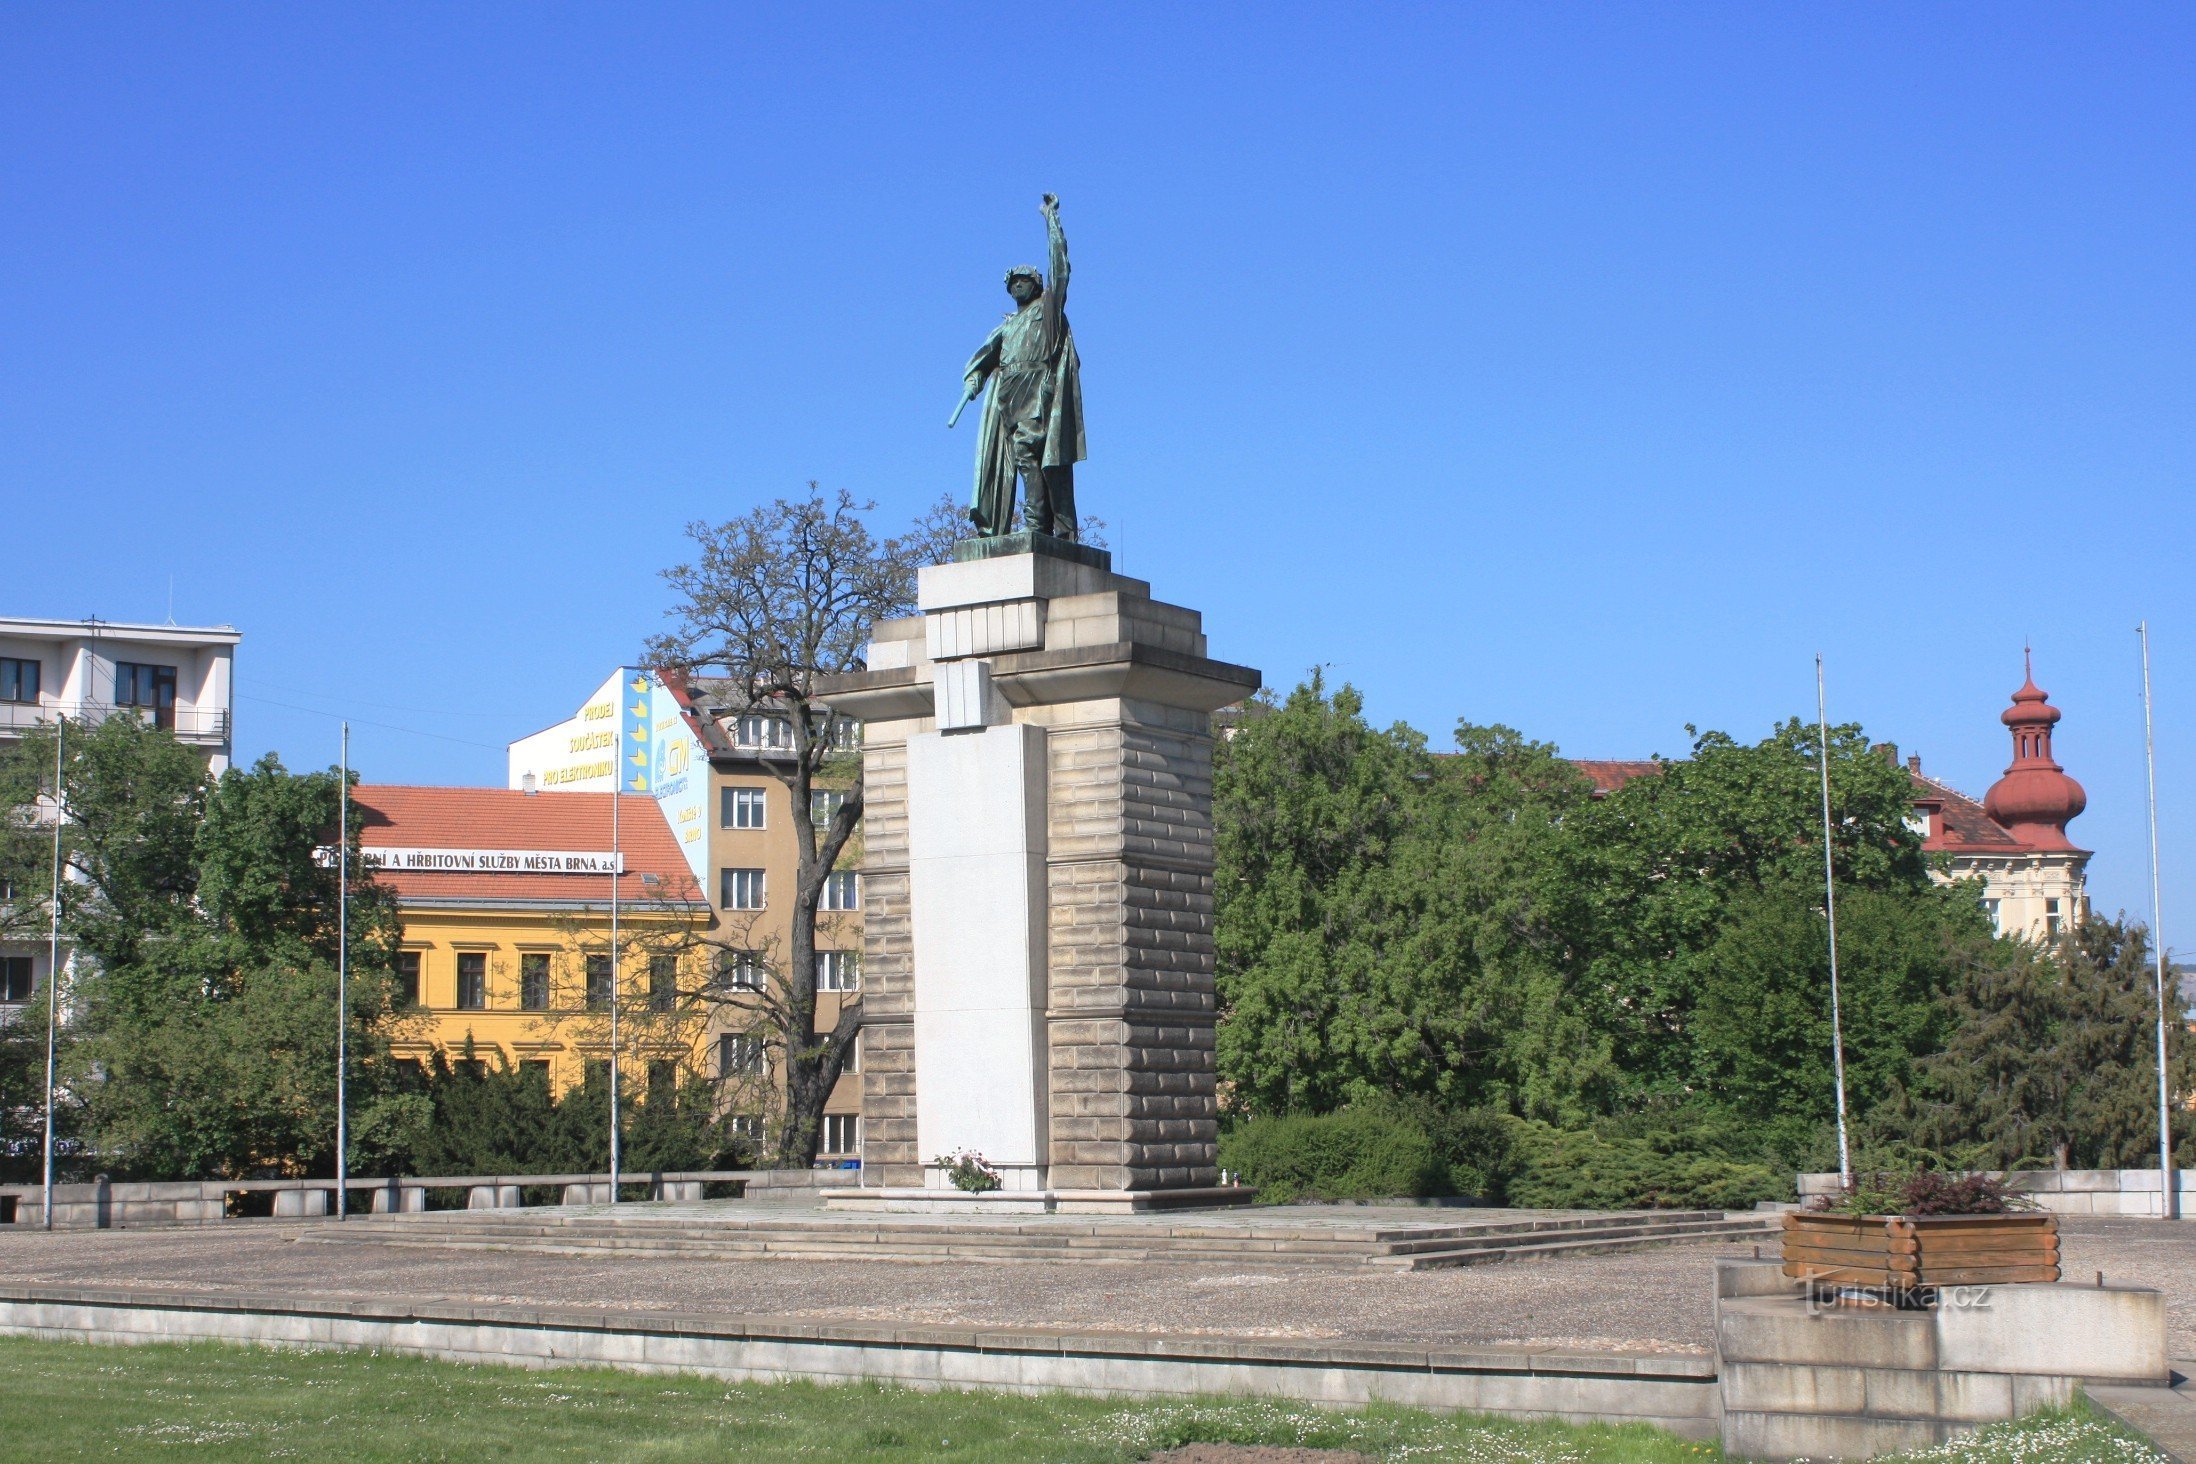 Pomnik Armii Czerwonej na Moravské náměstí (czerwiec 2010)